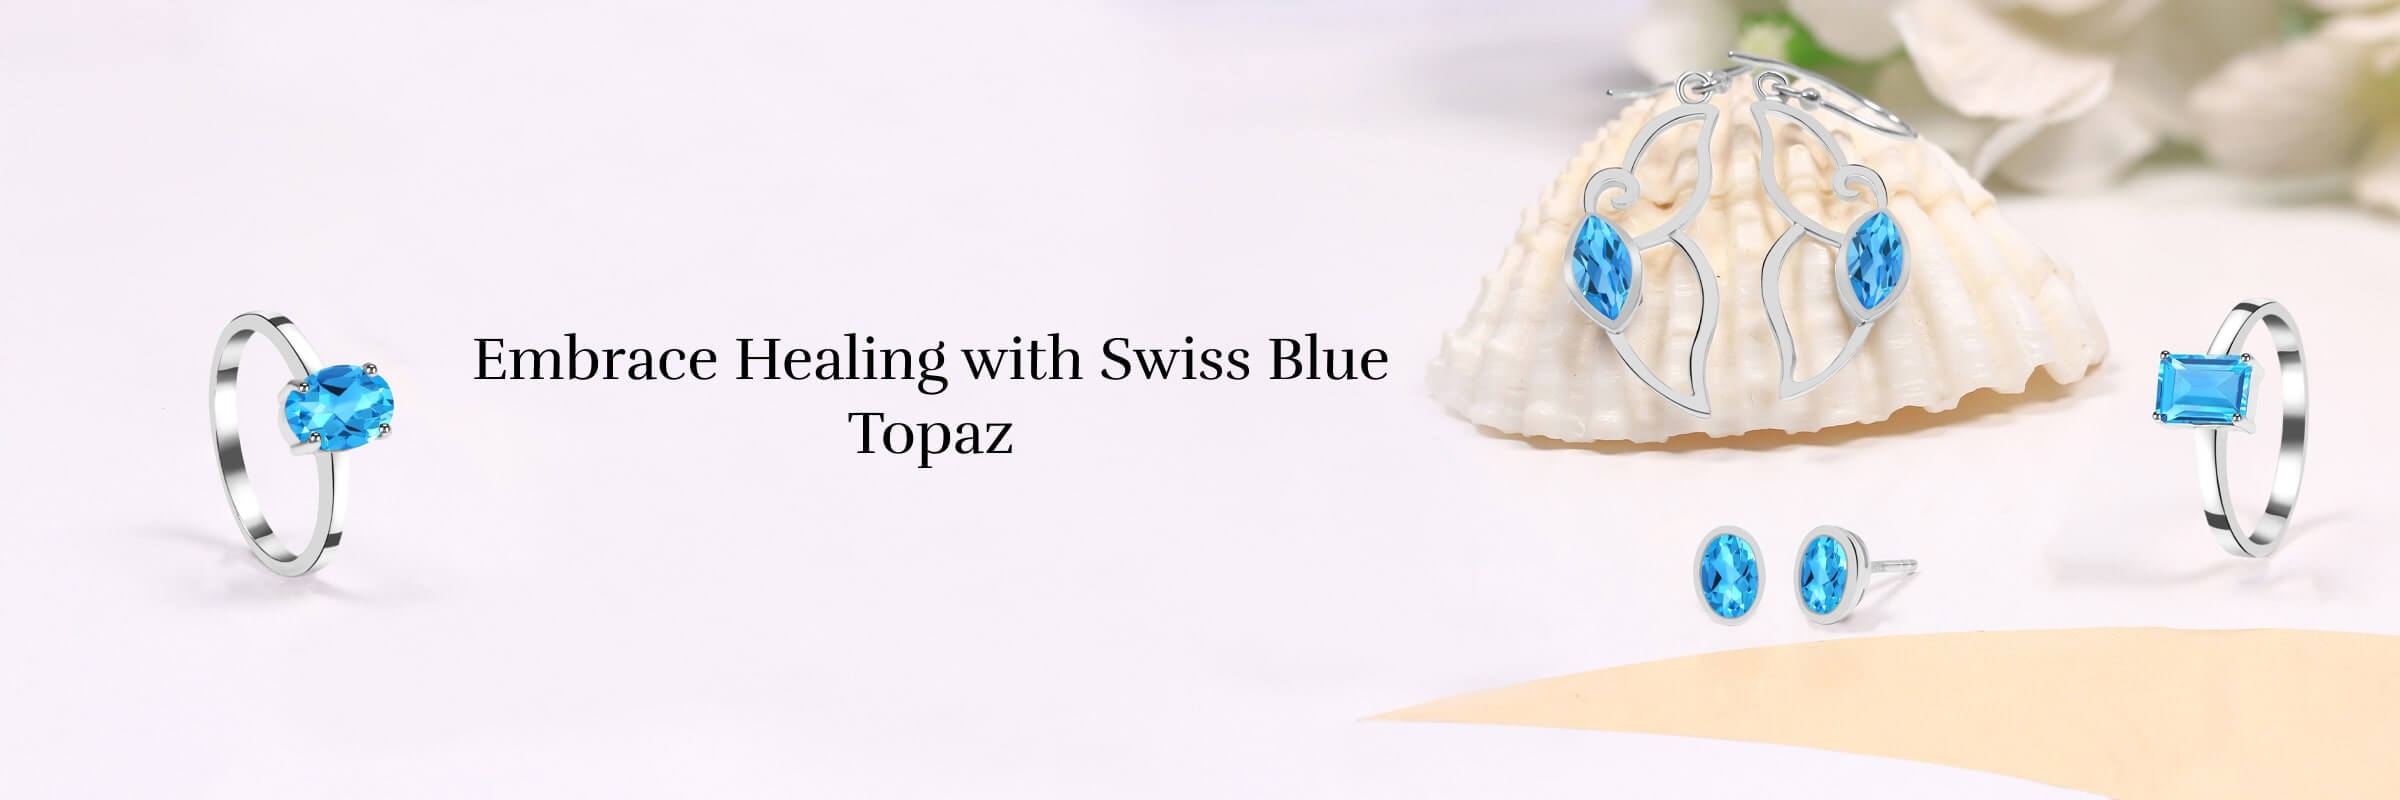 Swiss Blue Topaz Physical Healing Properties